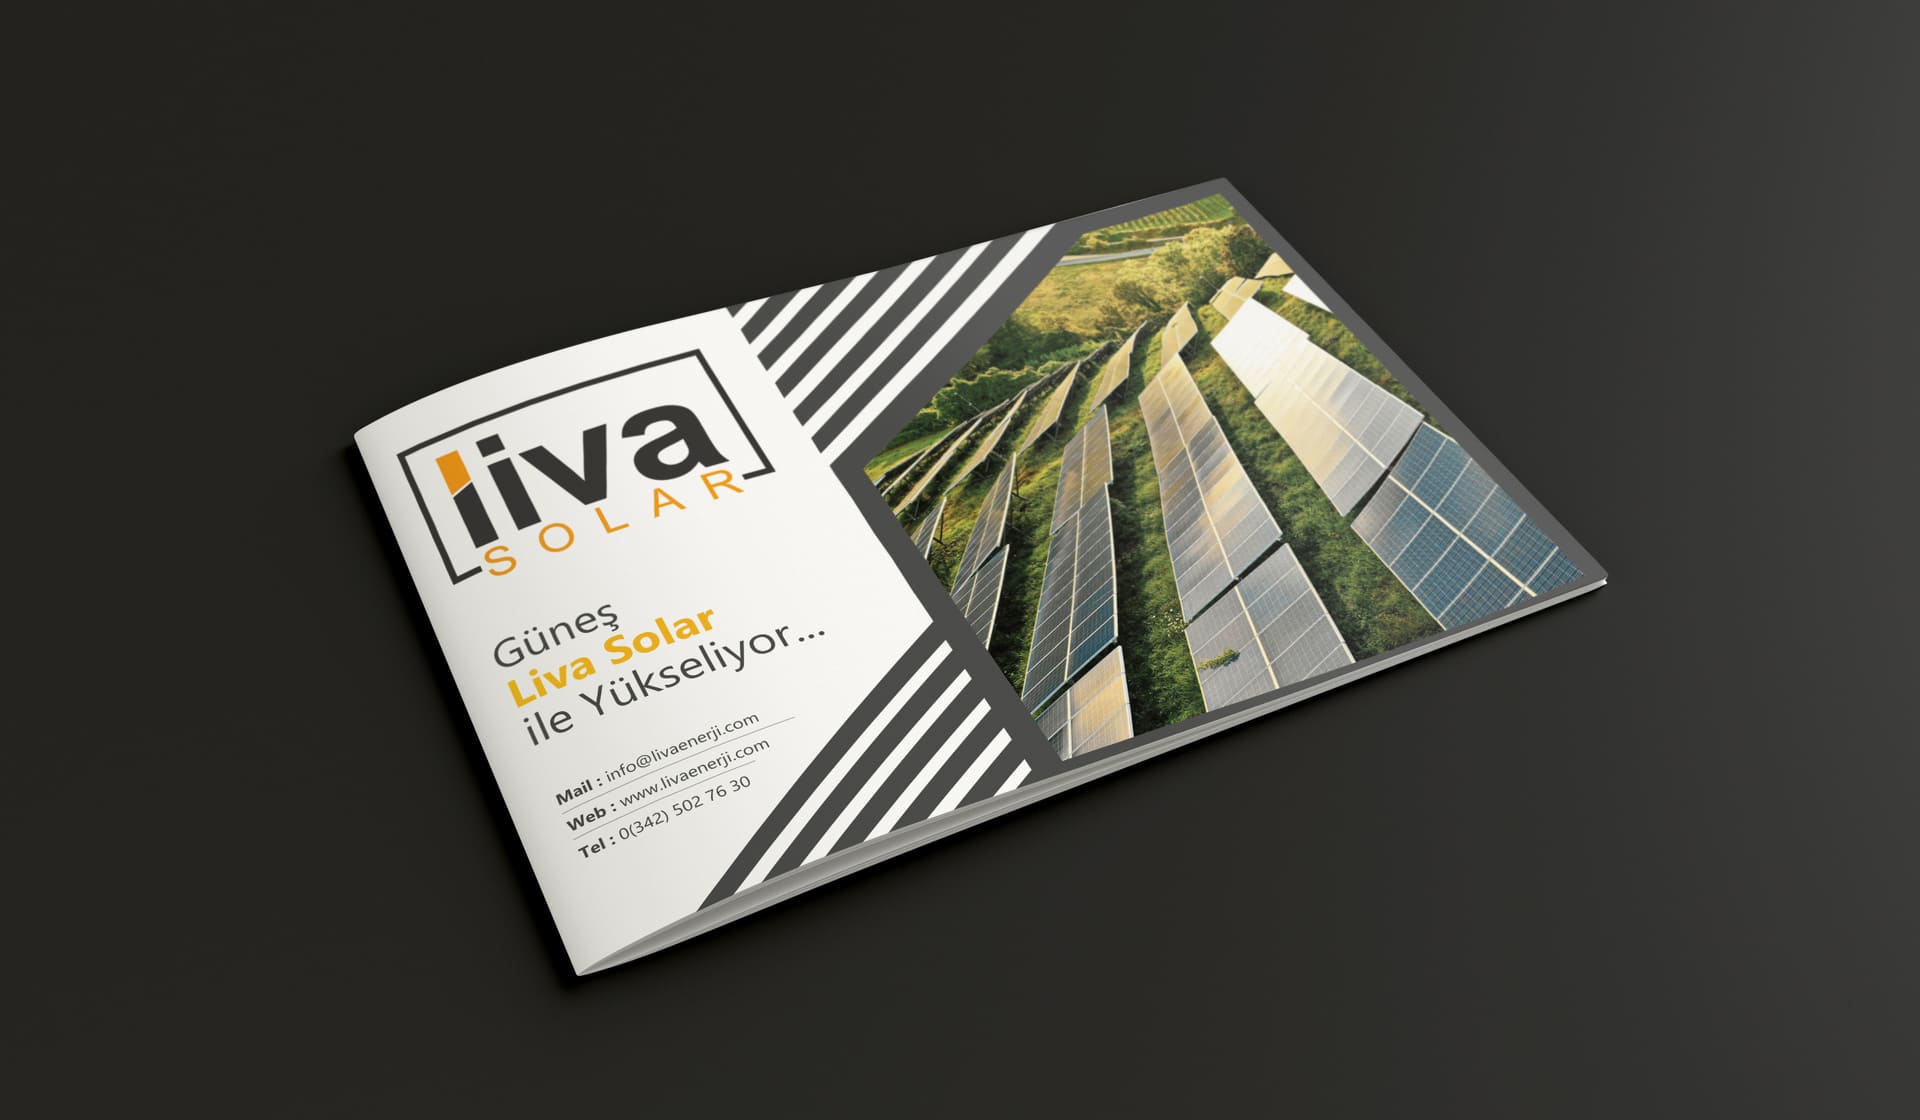 Liva Energy